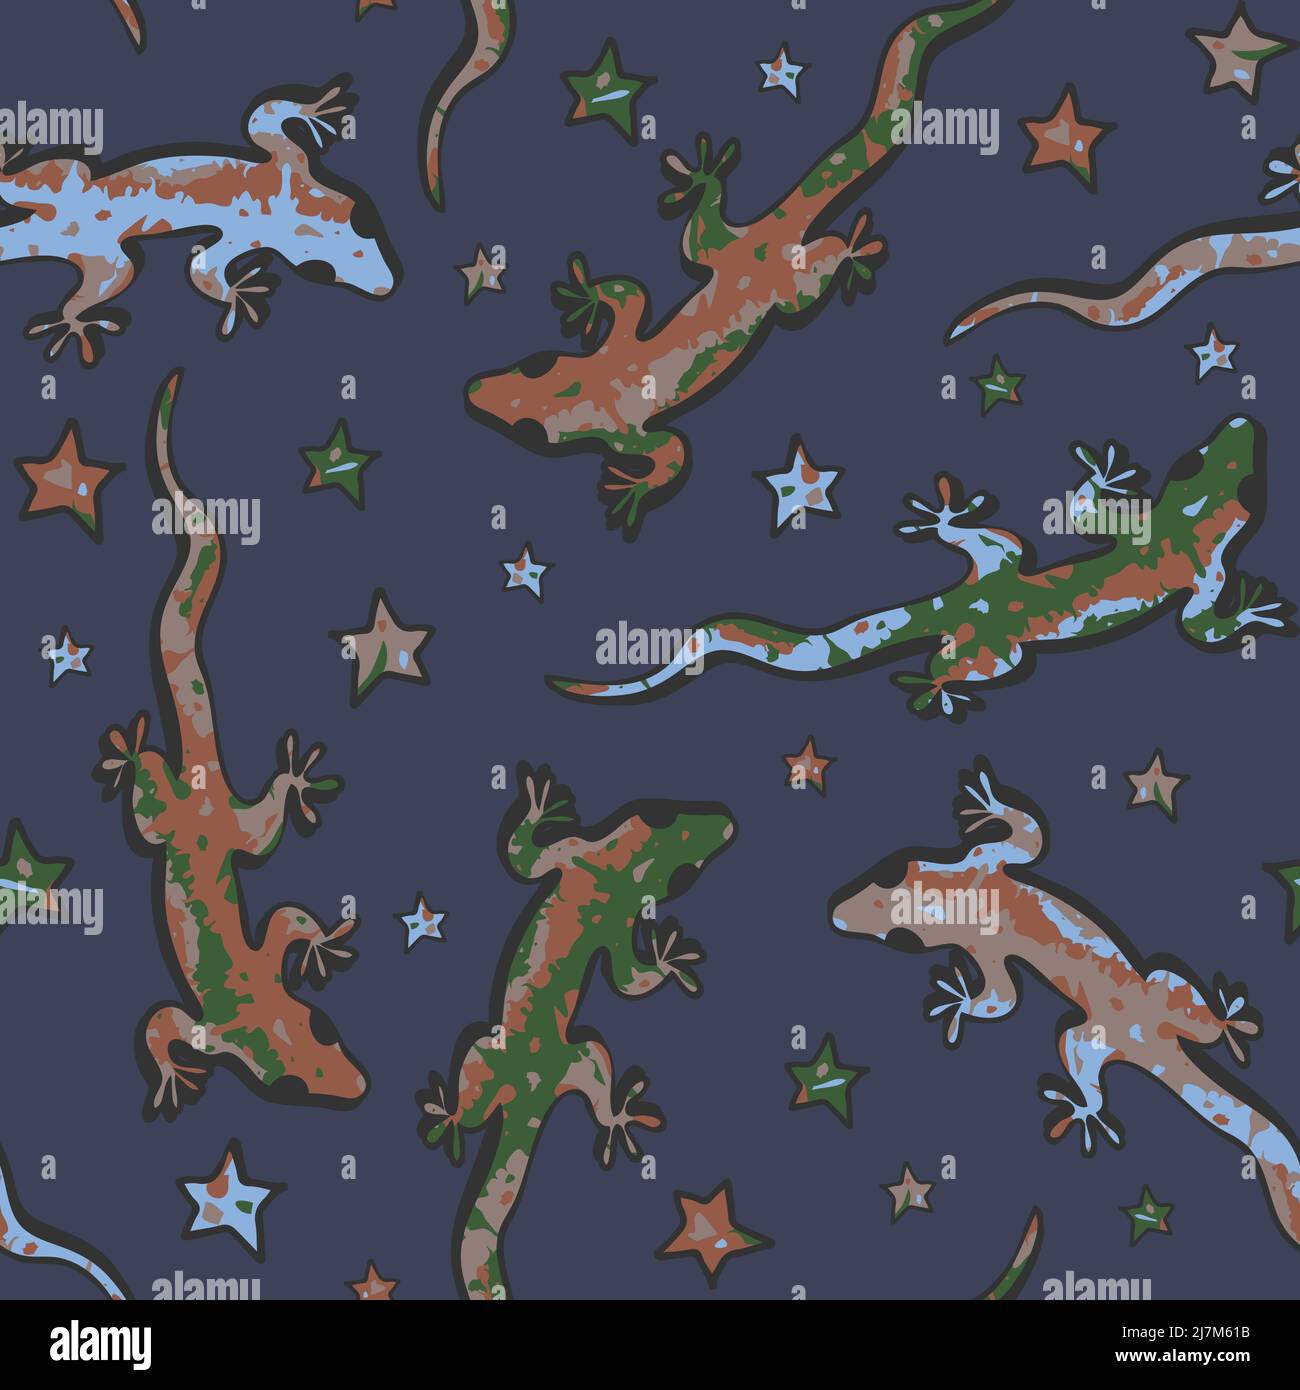 Motivo vettoriale senza cuciture con geckos colorati su sfondo blu. Carta da parati artistica animale con lucertole e stelle. Illustrazione Vettoriale